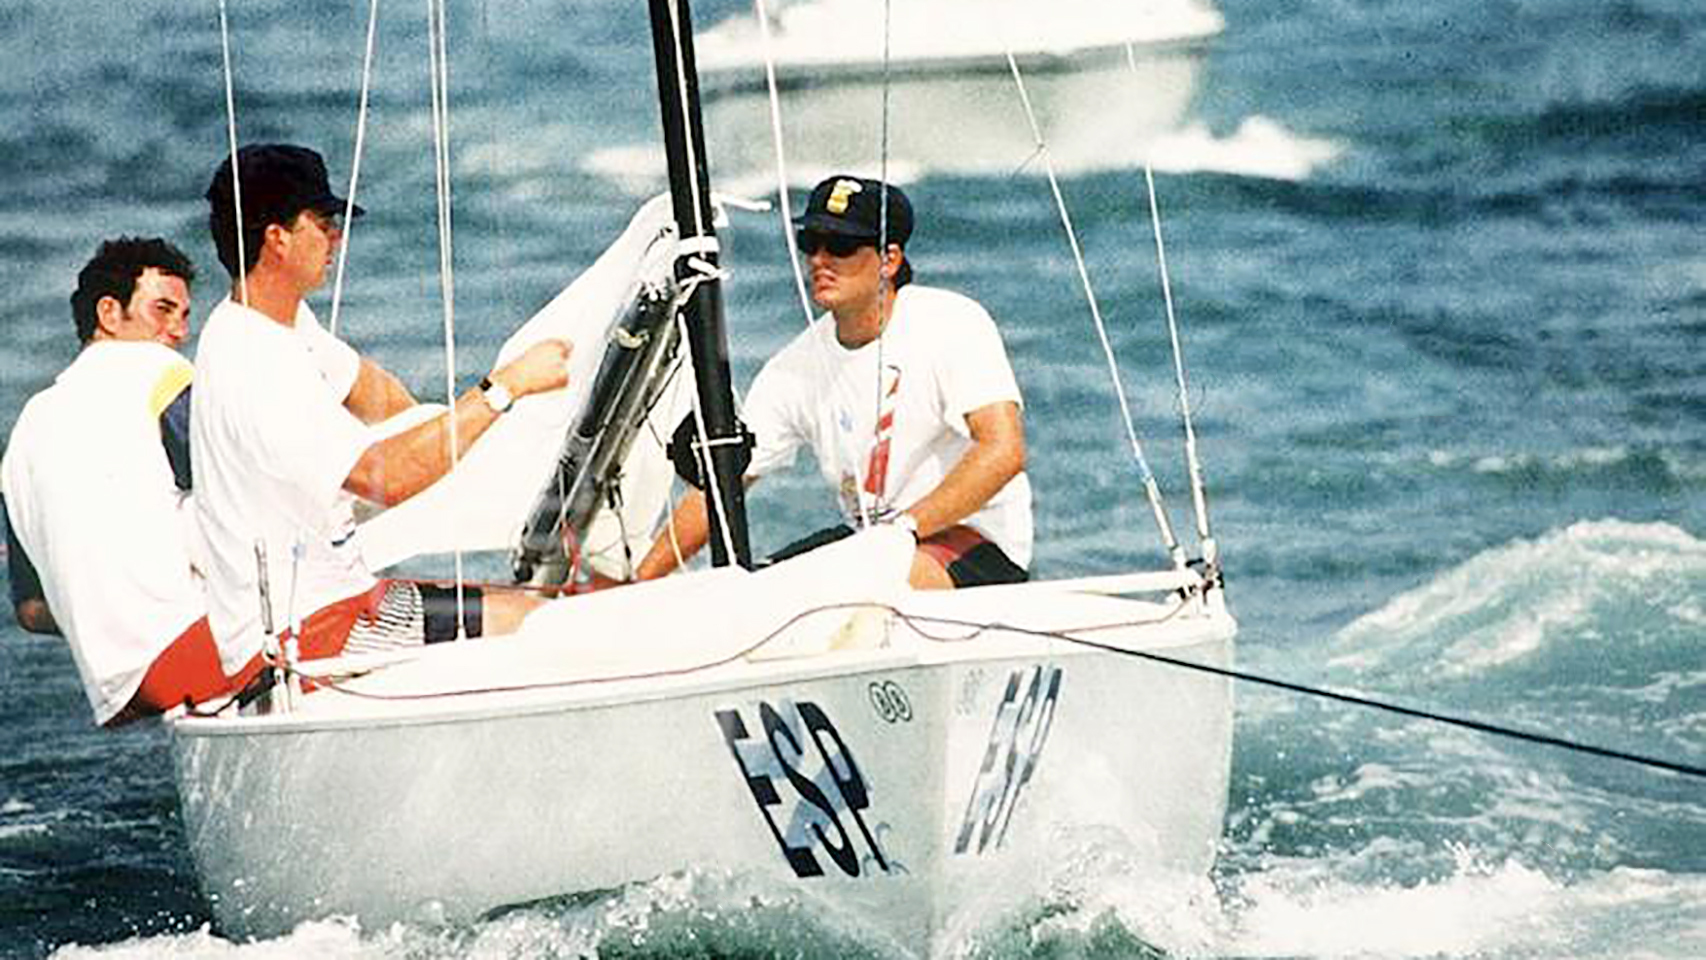 Felipe de Borbón participa en los Juegos Olímpicos  de Barcelona 1992 en Vela, en la clase Soling, junto a Fernando León y Alfredo Vázquez